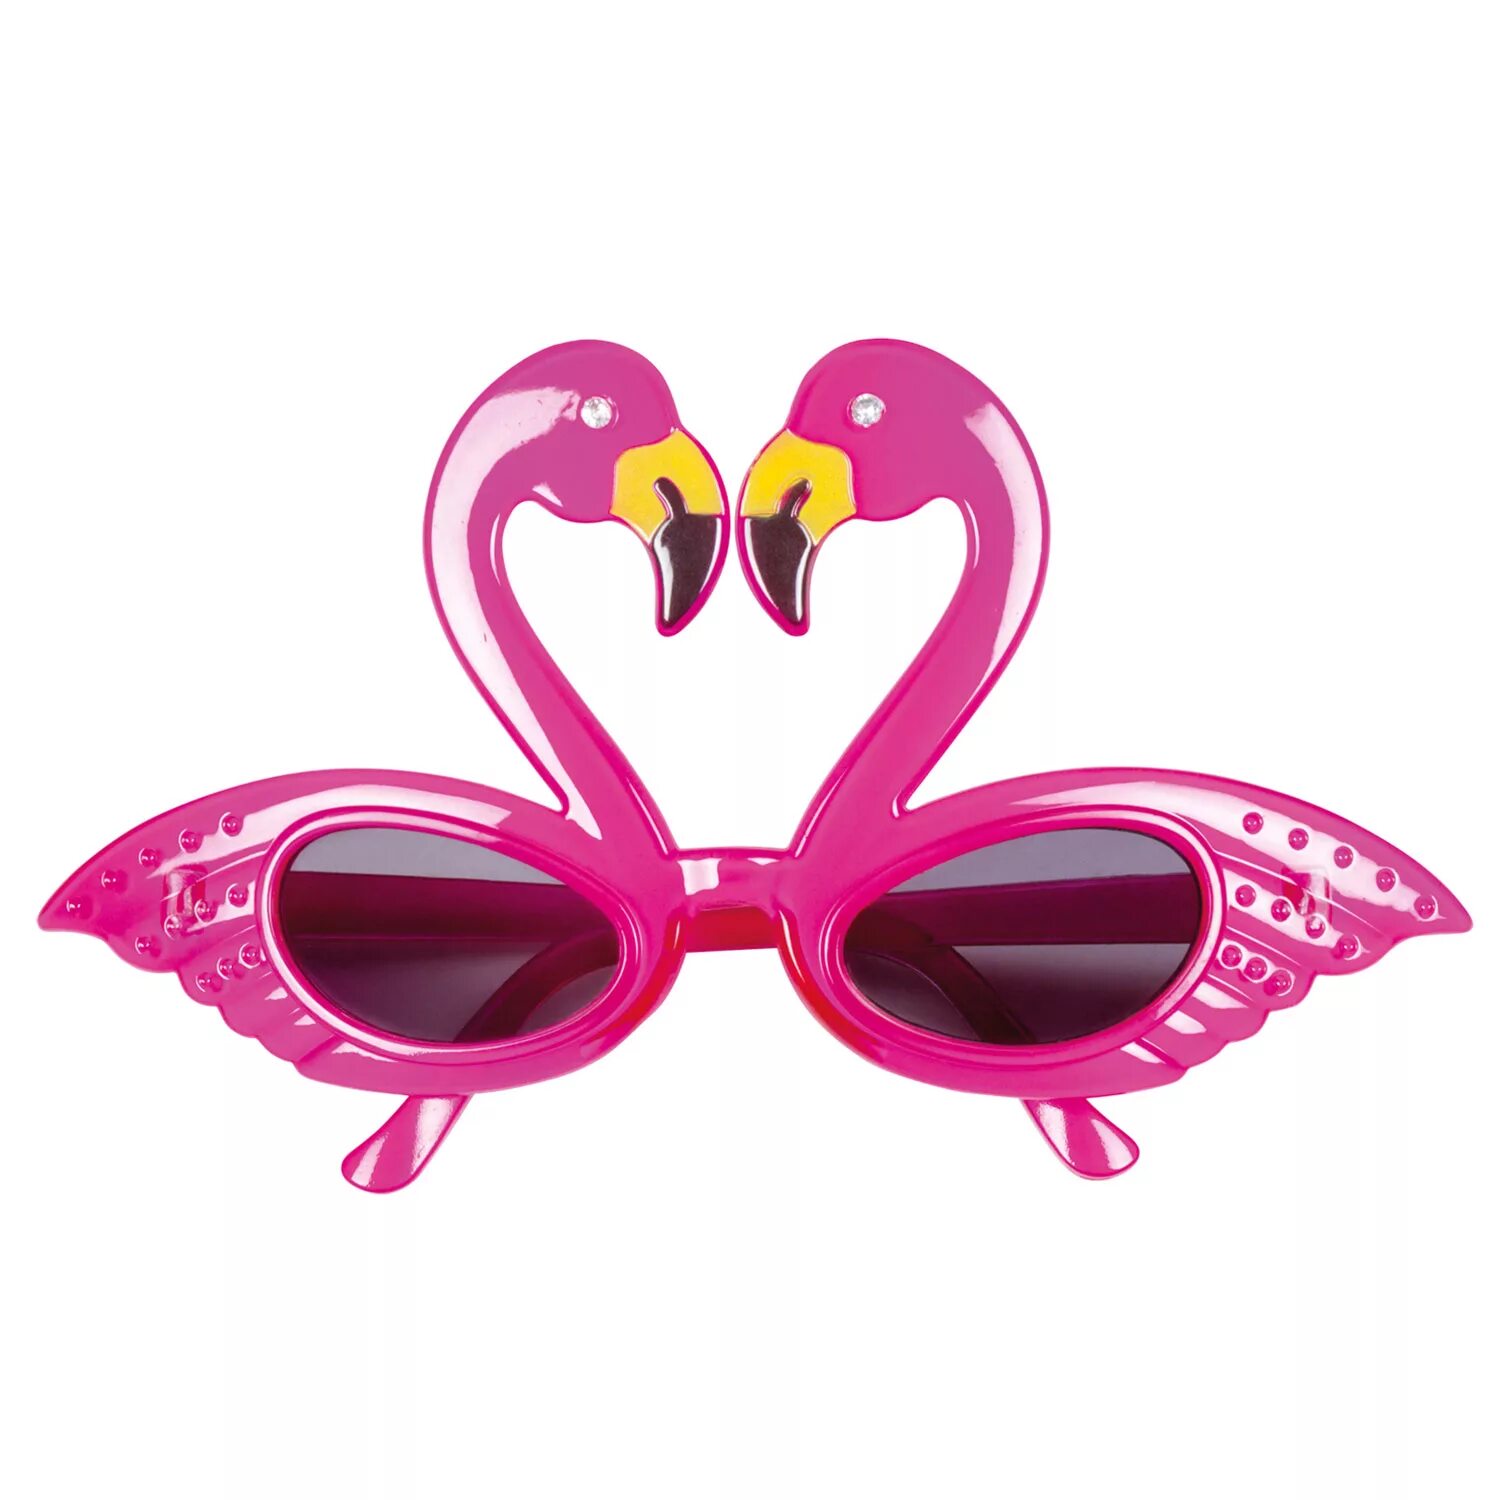 Flamingo очки 12894. Очки Flamingo 11704. Flamingo очки солнцезащитные. Розовые очки Фламинго.